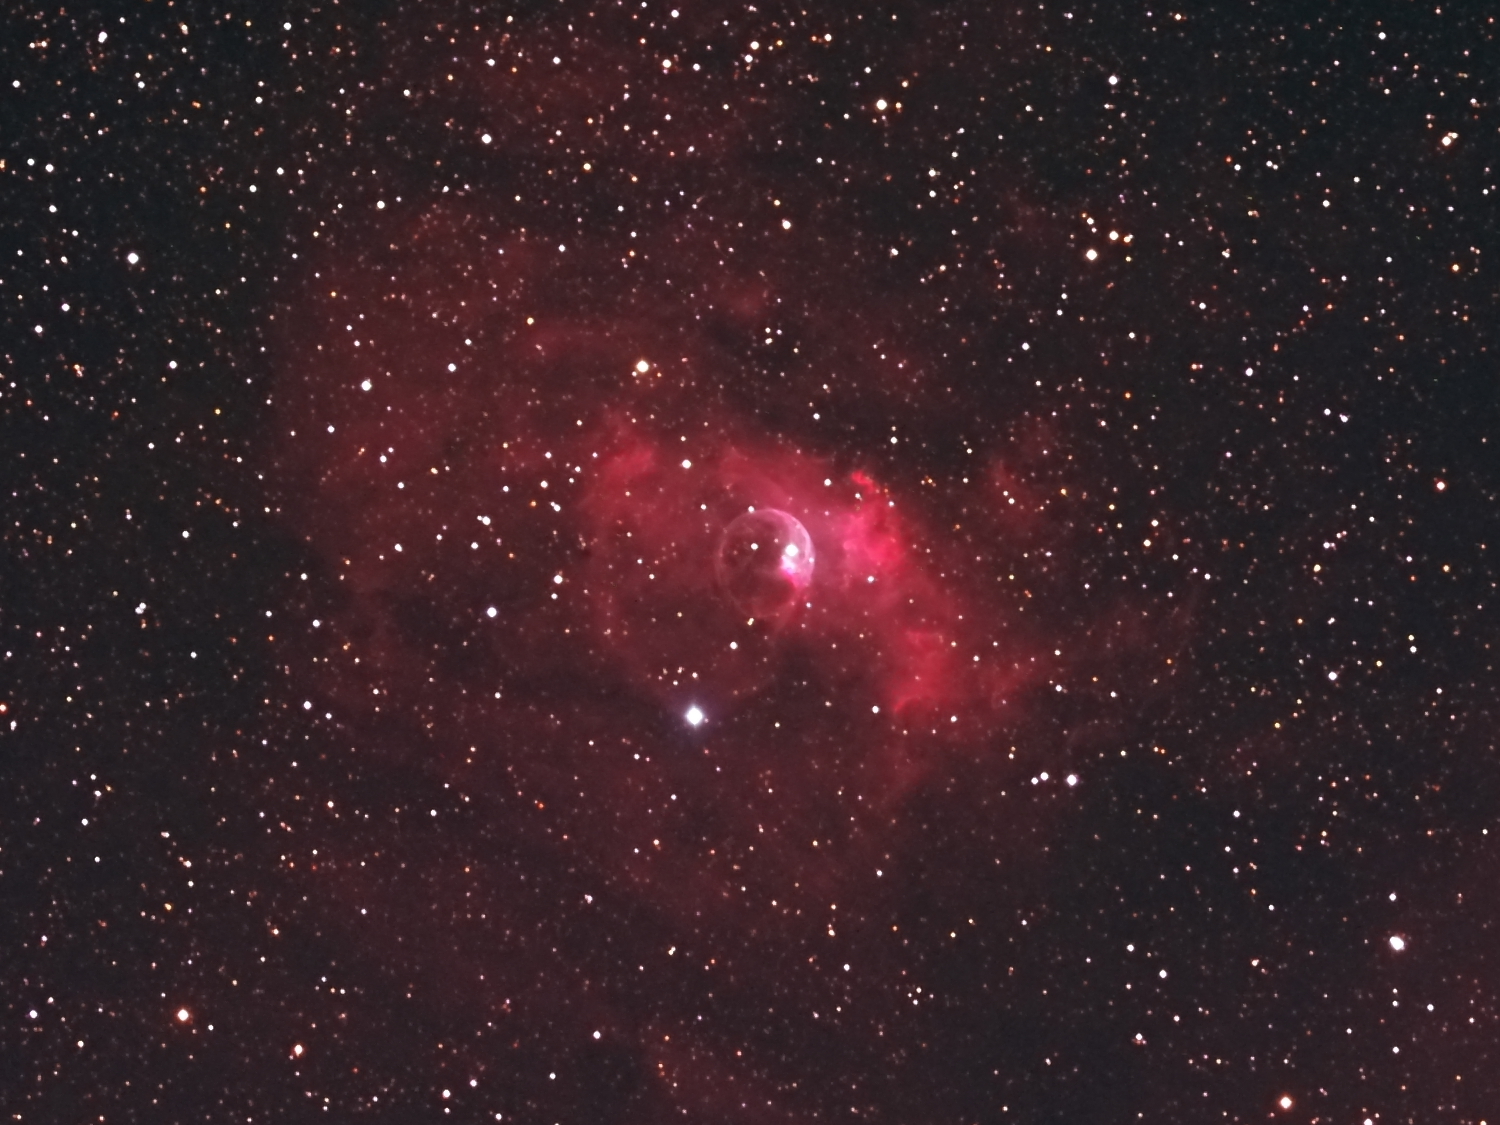 eeb791d2d1af6cb6849b838bf697d88f.JPG : Bubble nebula & M52  인근 영역